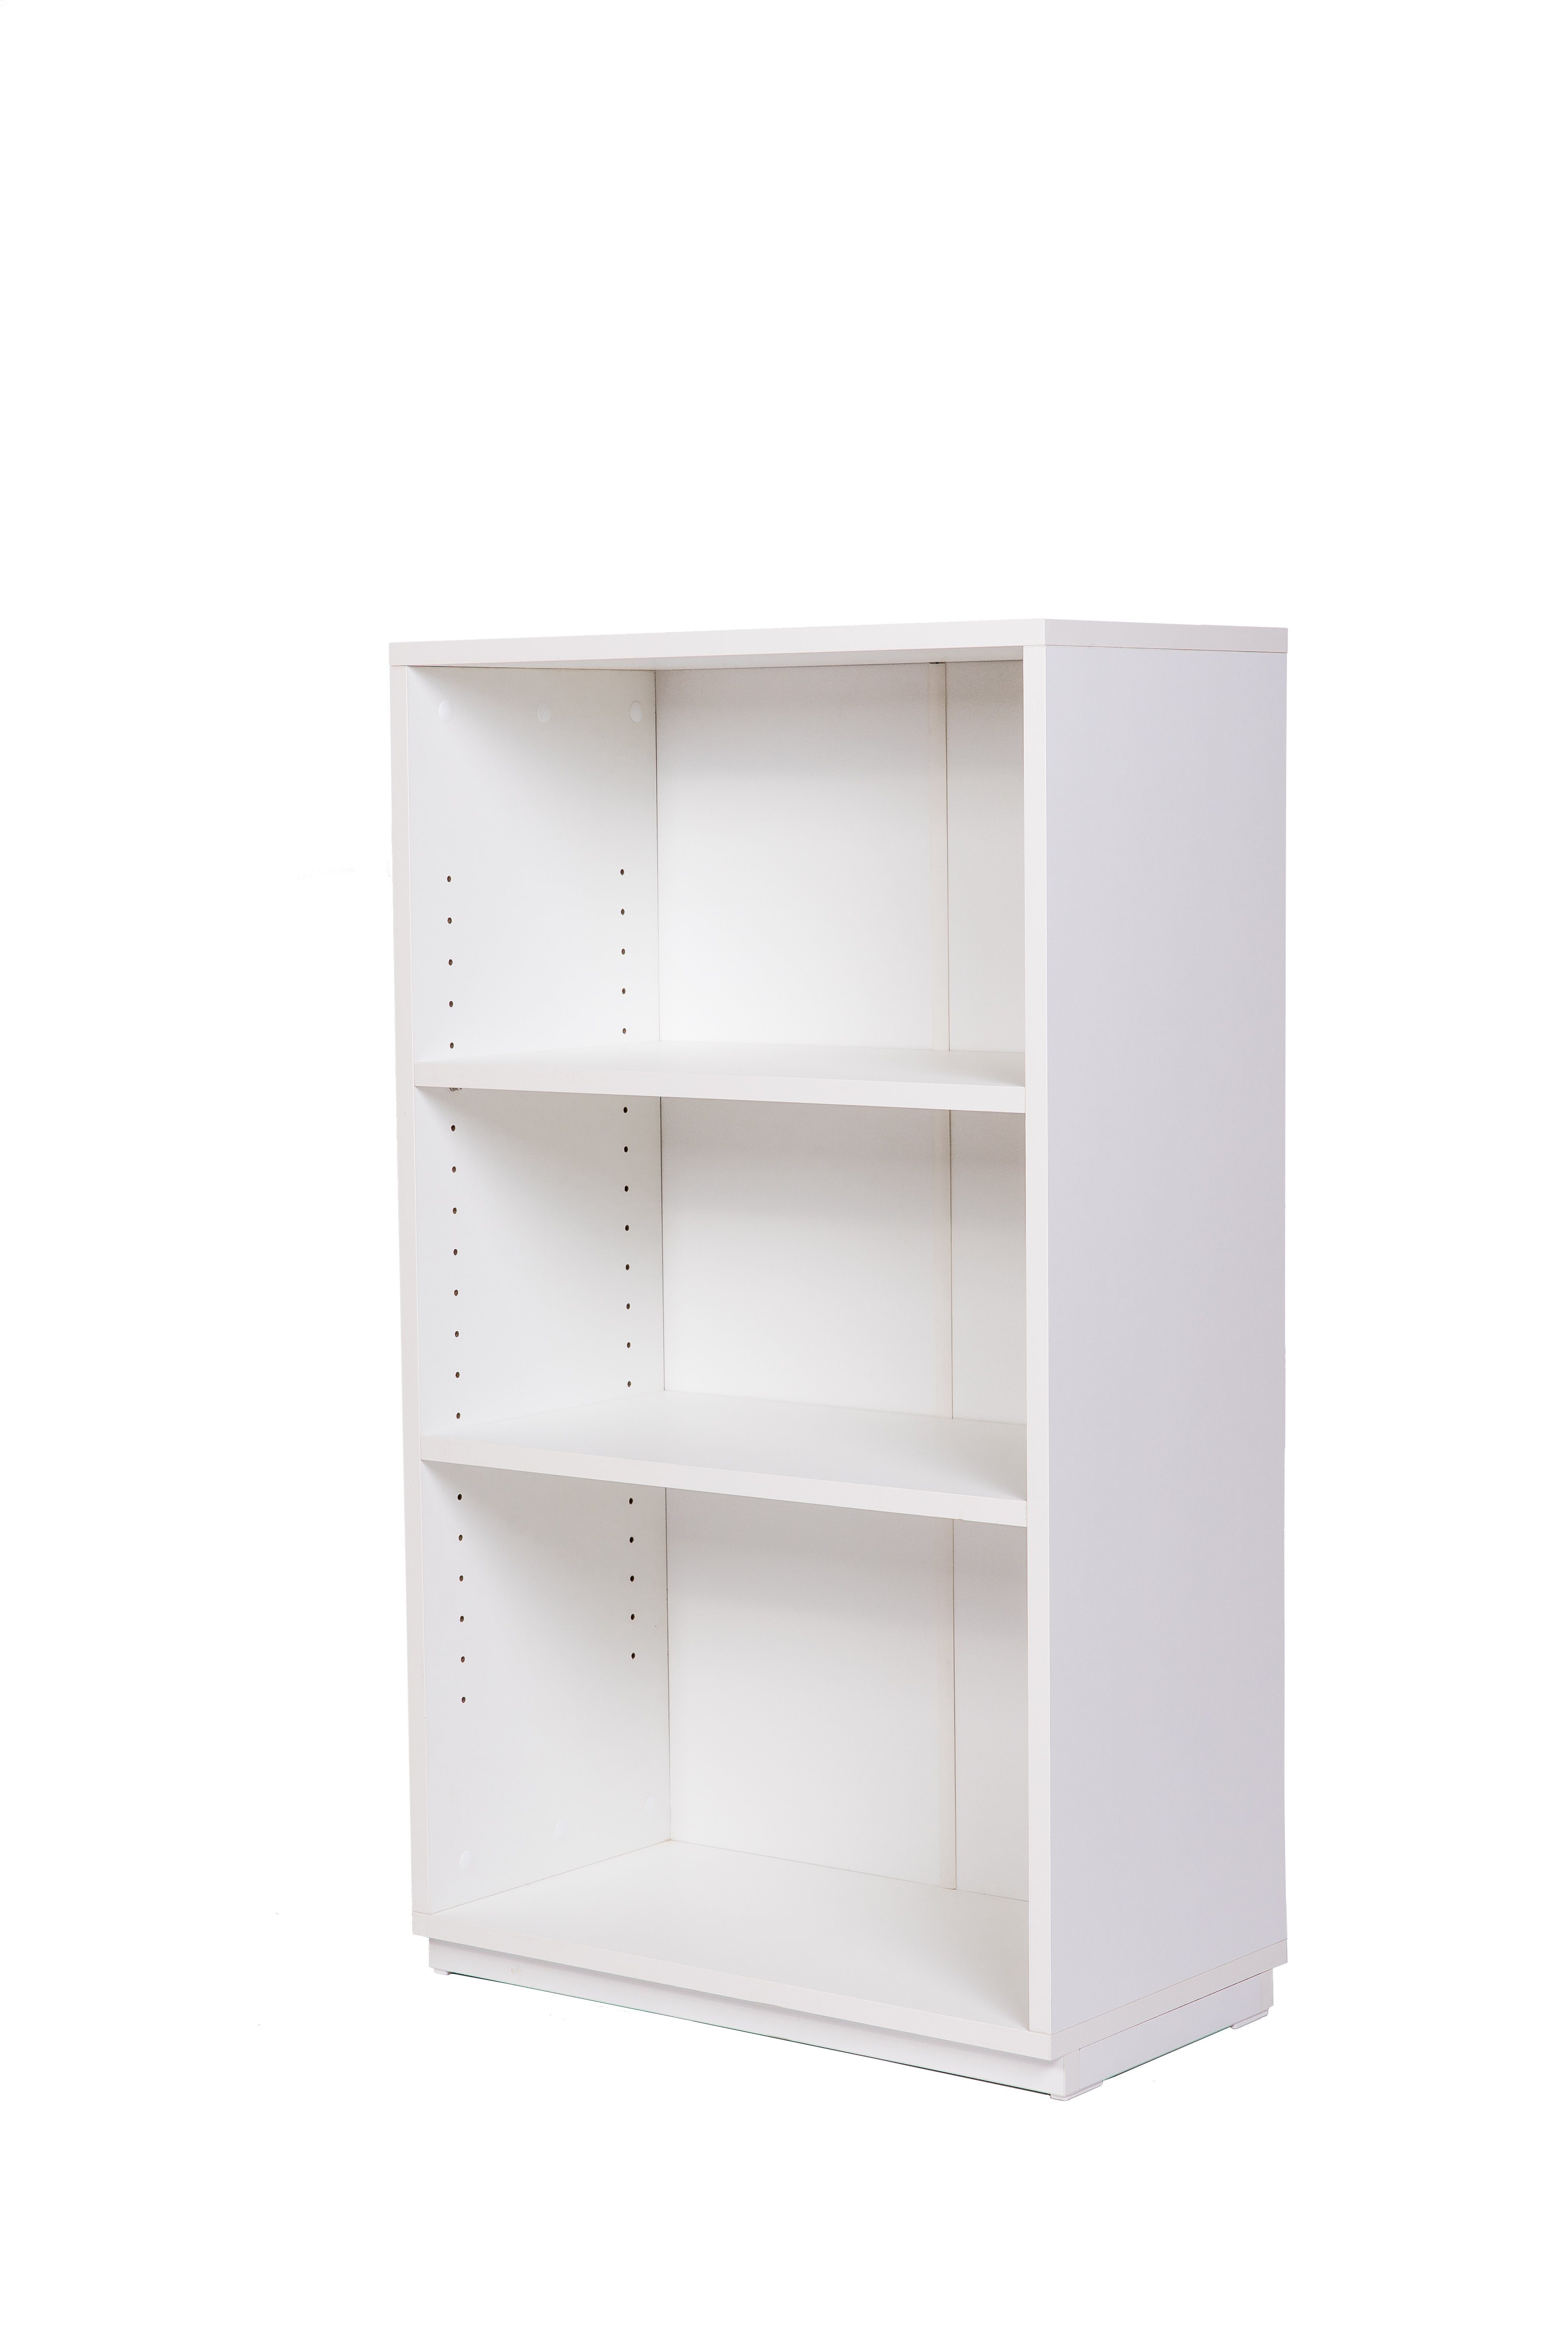 B H100 kundler cm Wohnzimmerregal home 60, Weiß individuell kombinierbar oder Regal T32, Bücherregal Premiumdekor